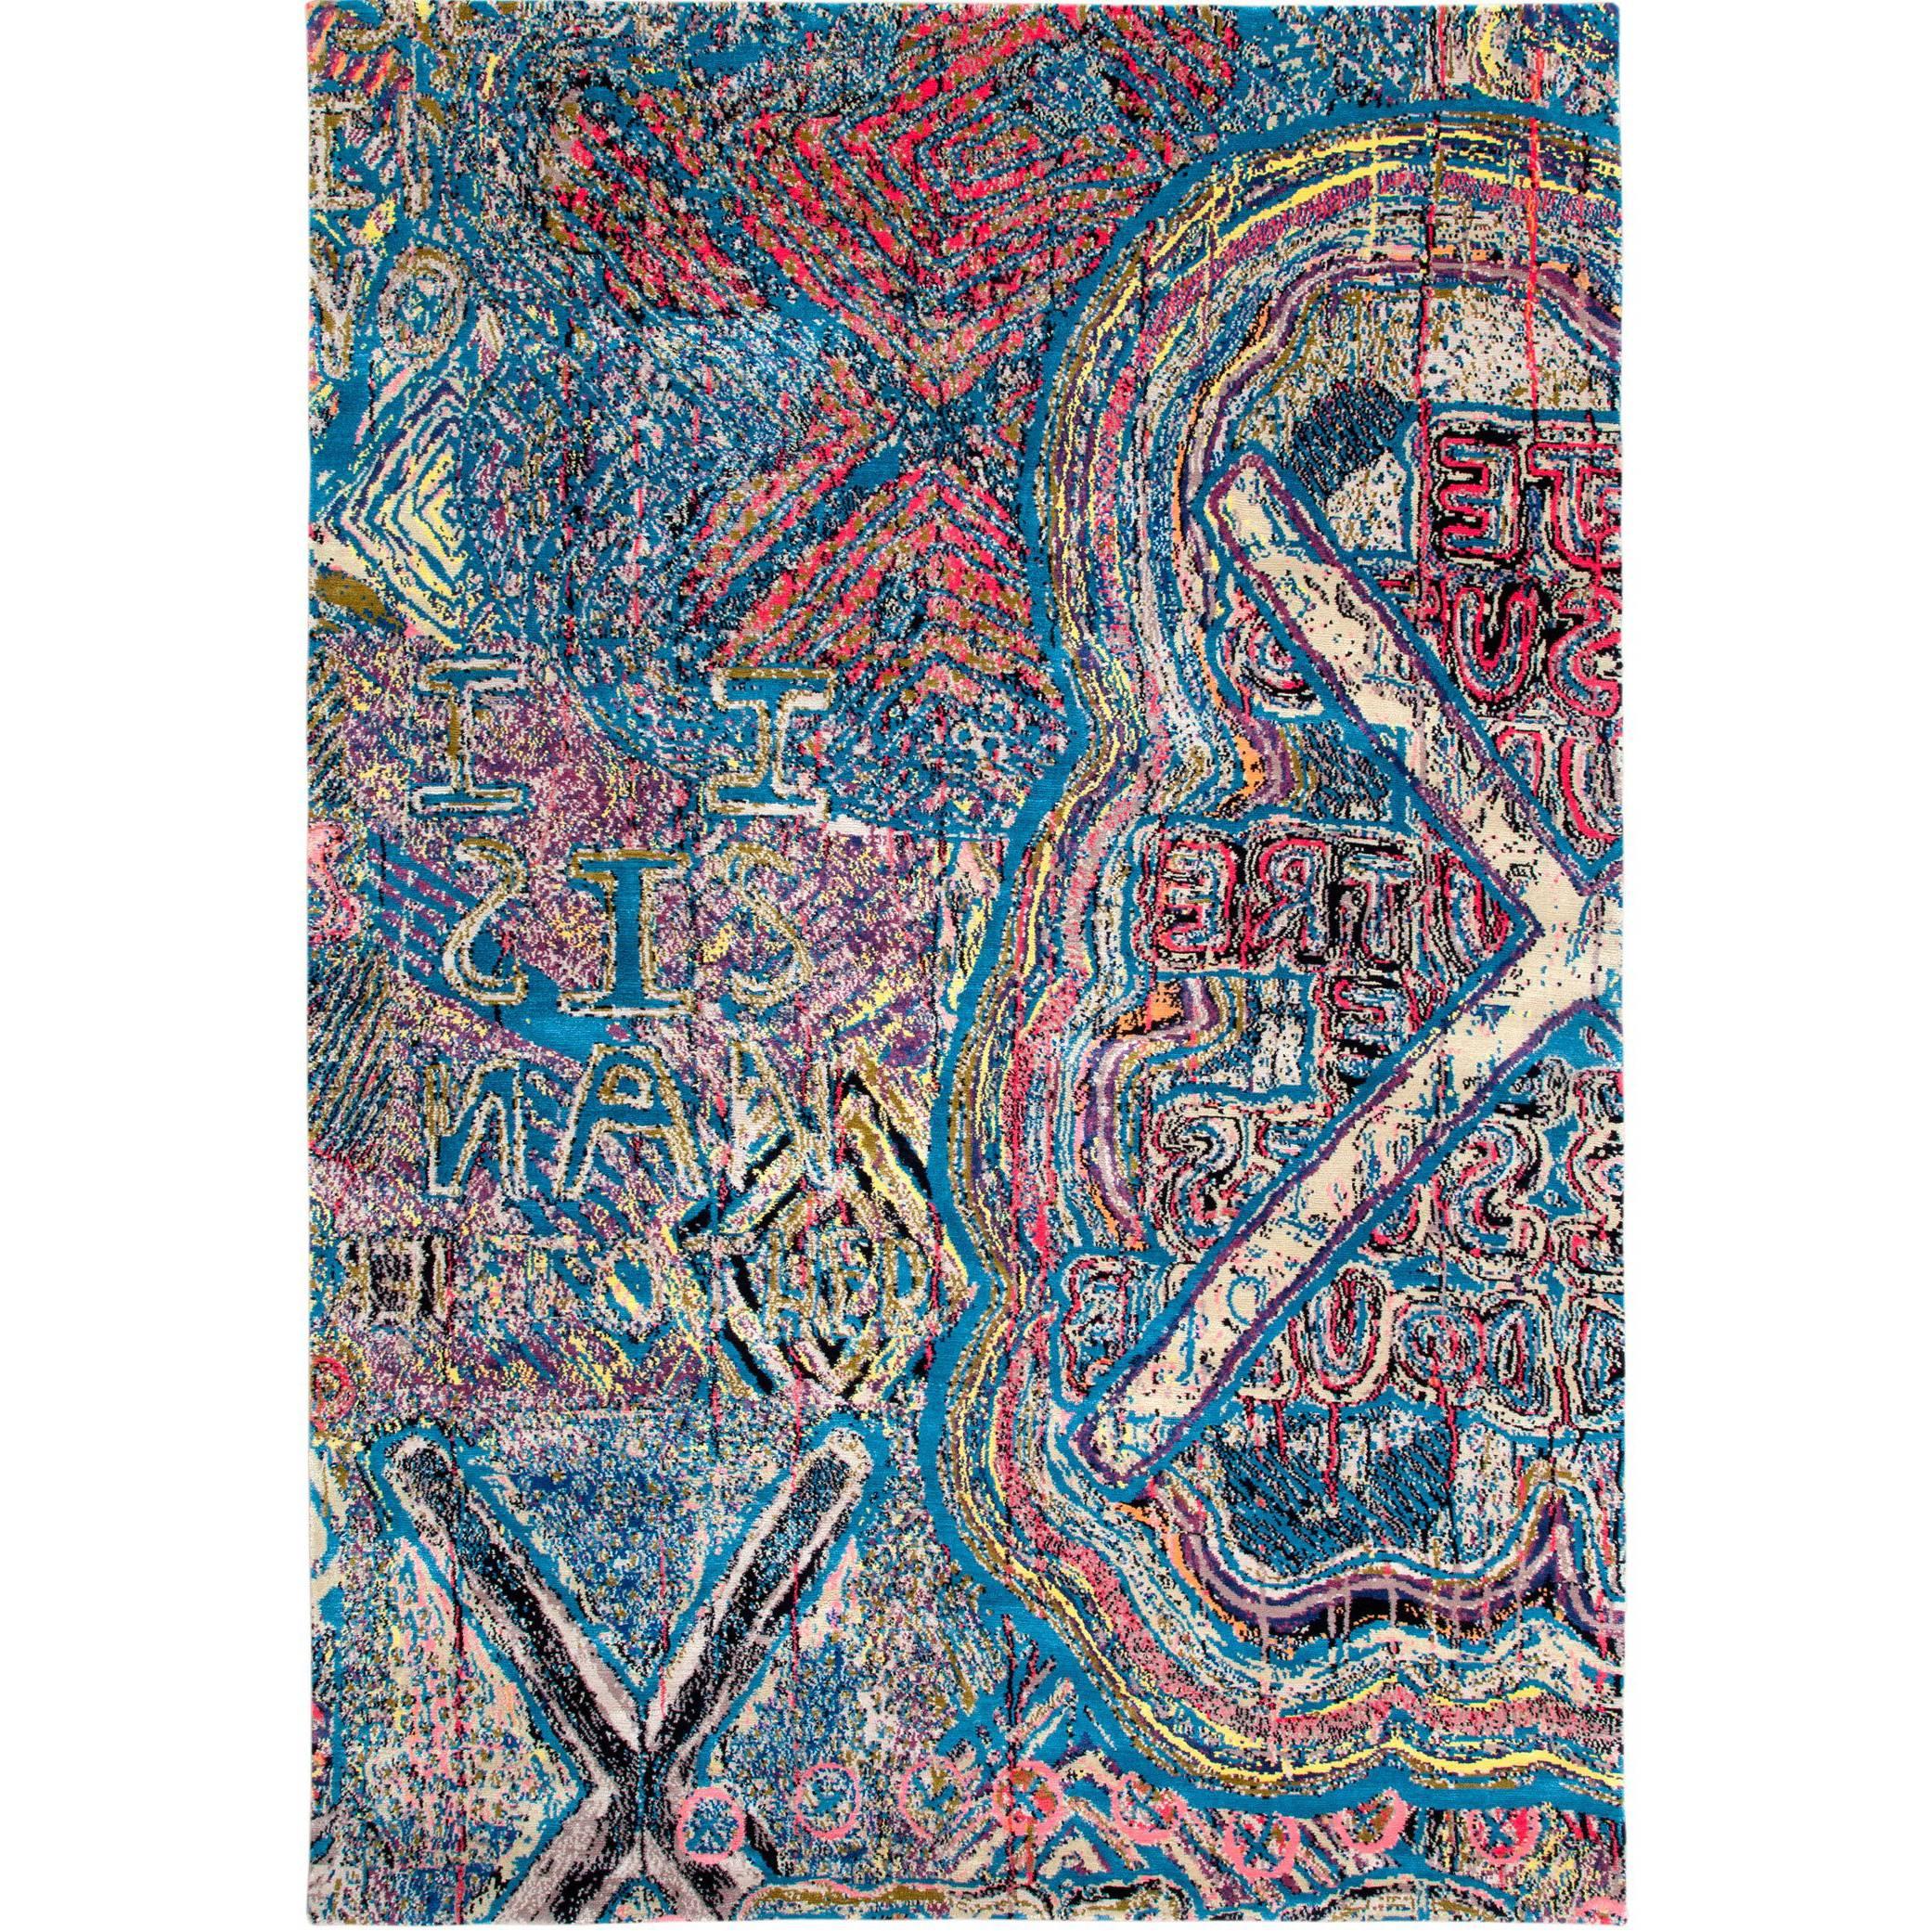 Zeitgenössischer Teppich aus mehrfarbiger Seide und Wolle, 6x9